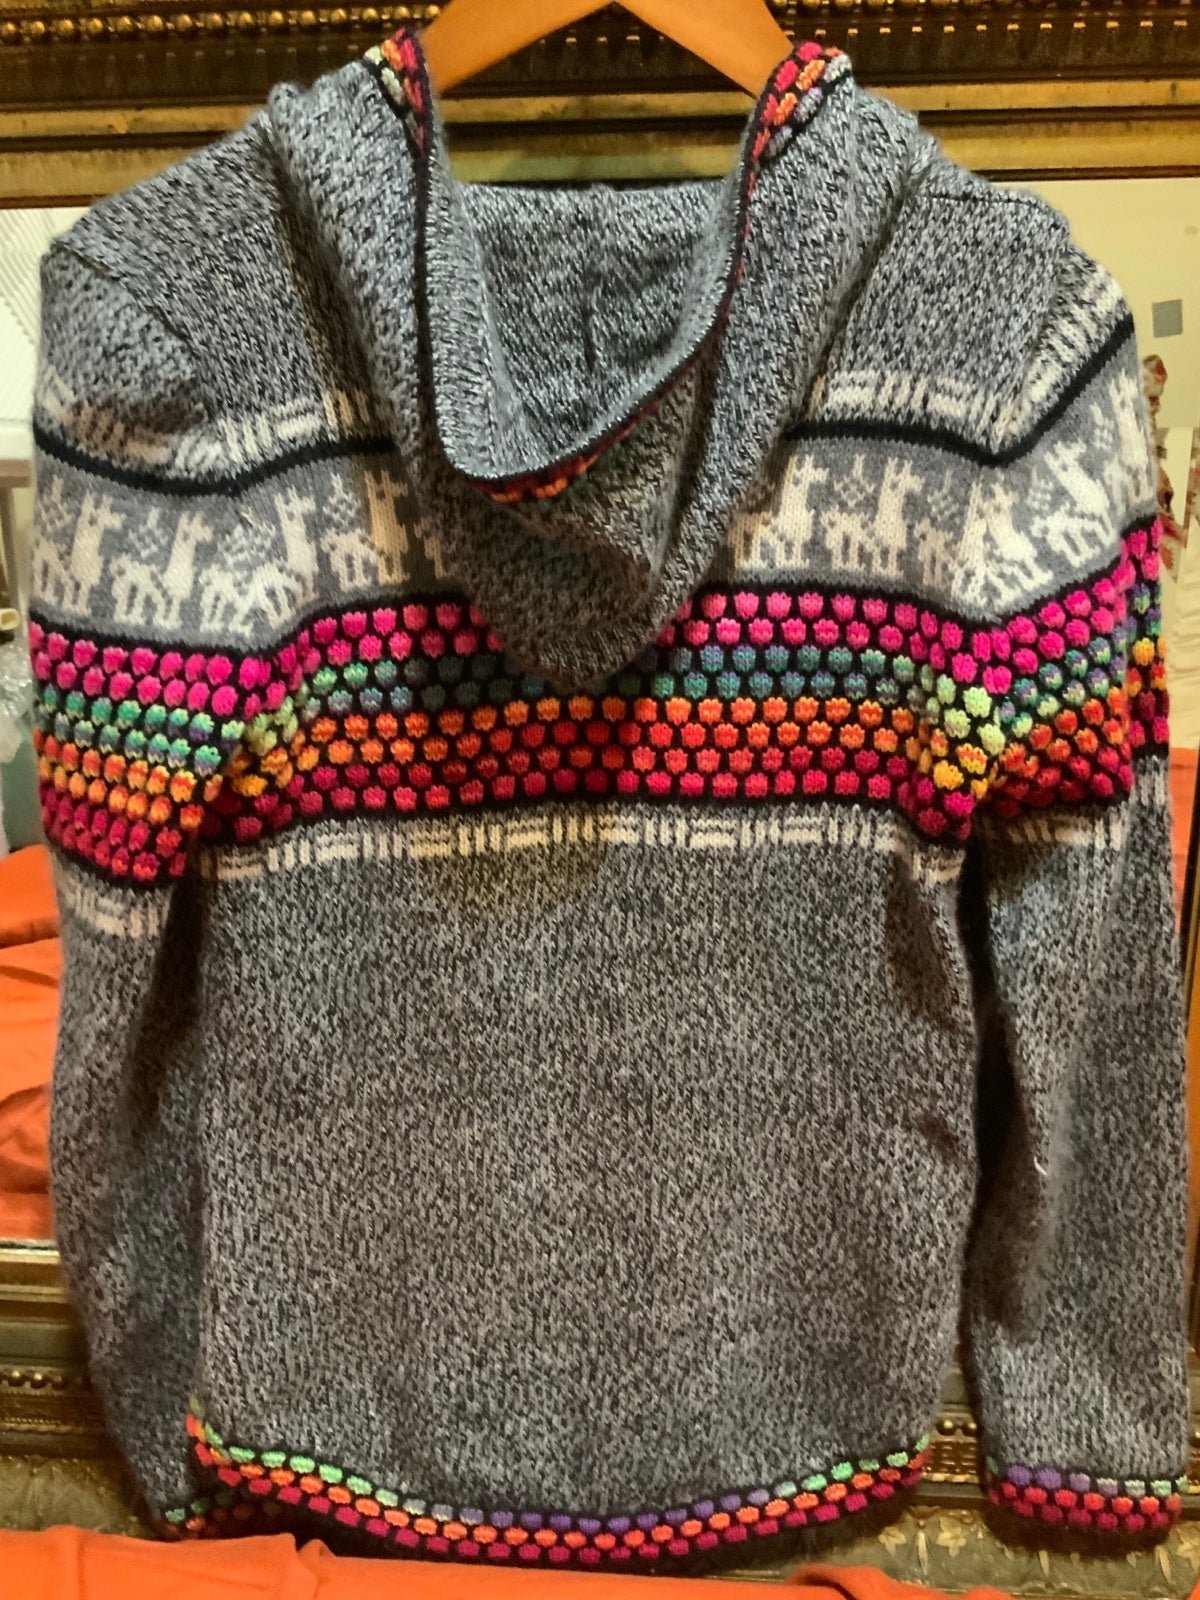 Custom Handmade Alpaca Hooded Zippup Sweater Jacket w/ Pockets size Small MYzXW19Mw New Style